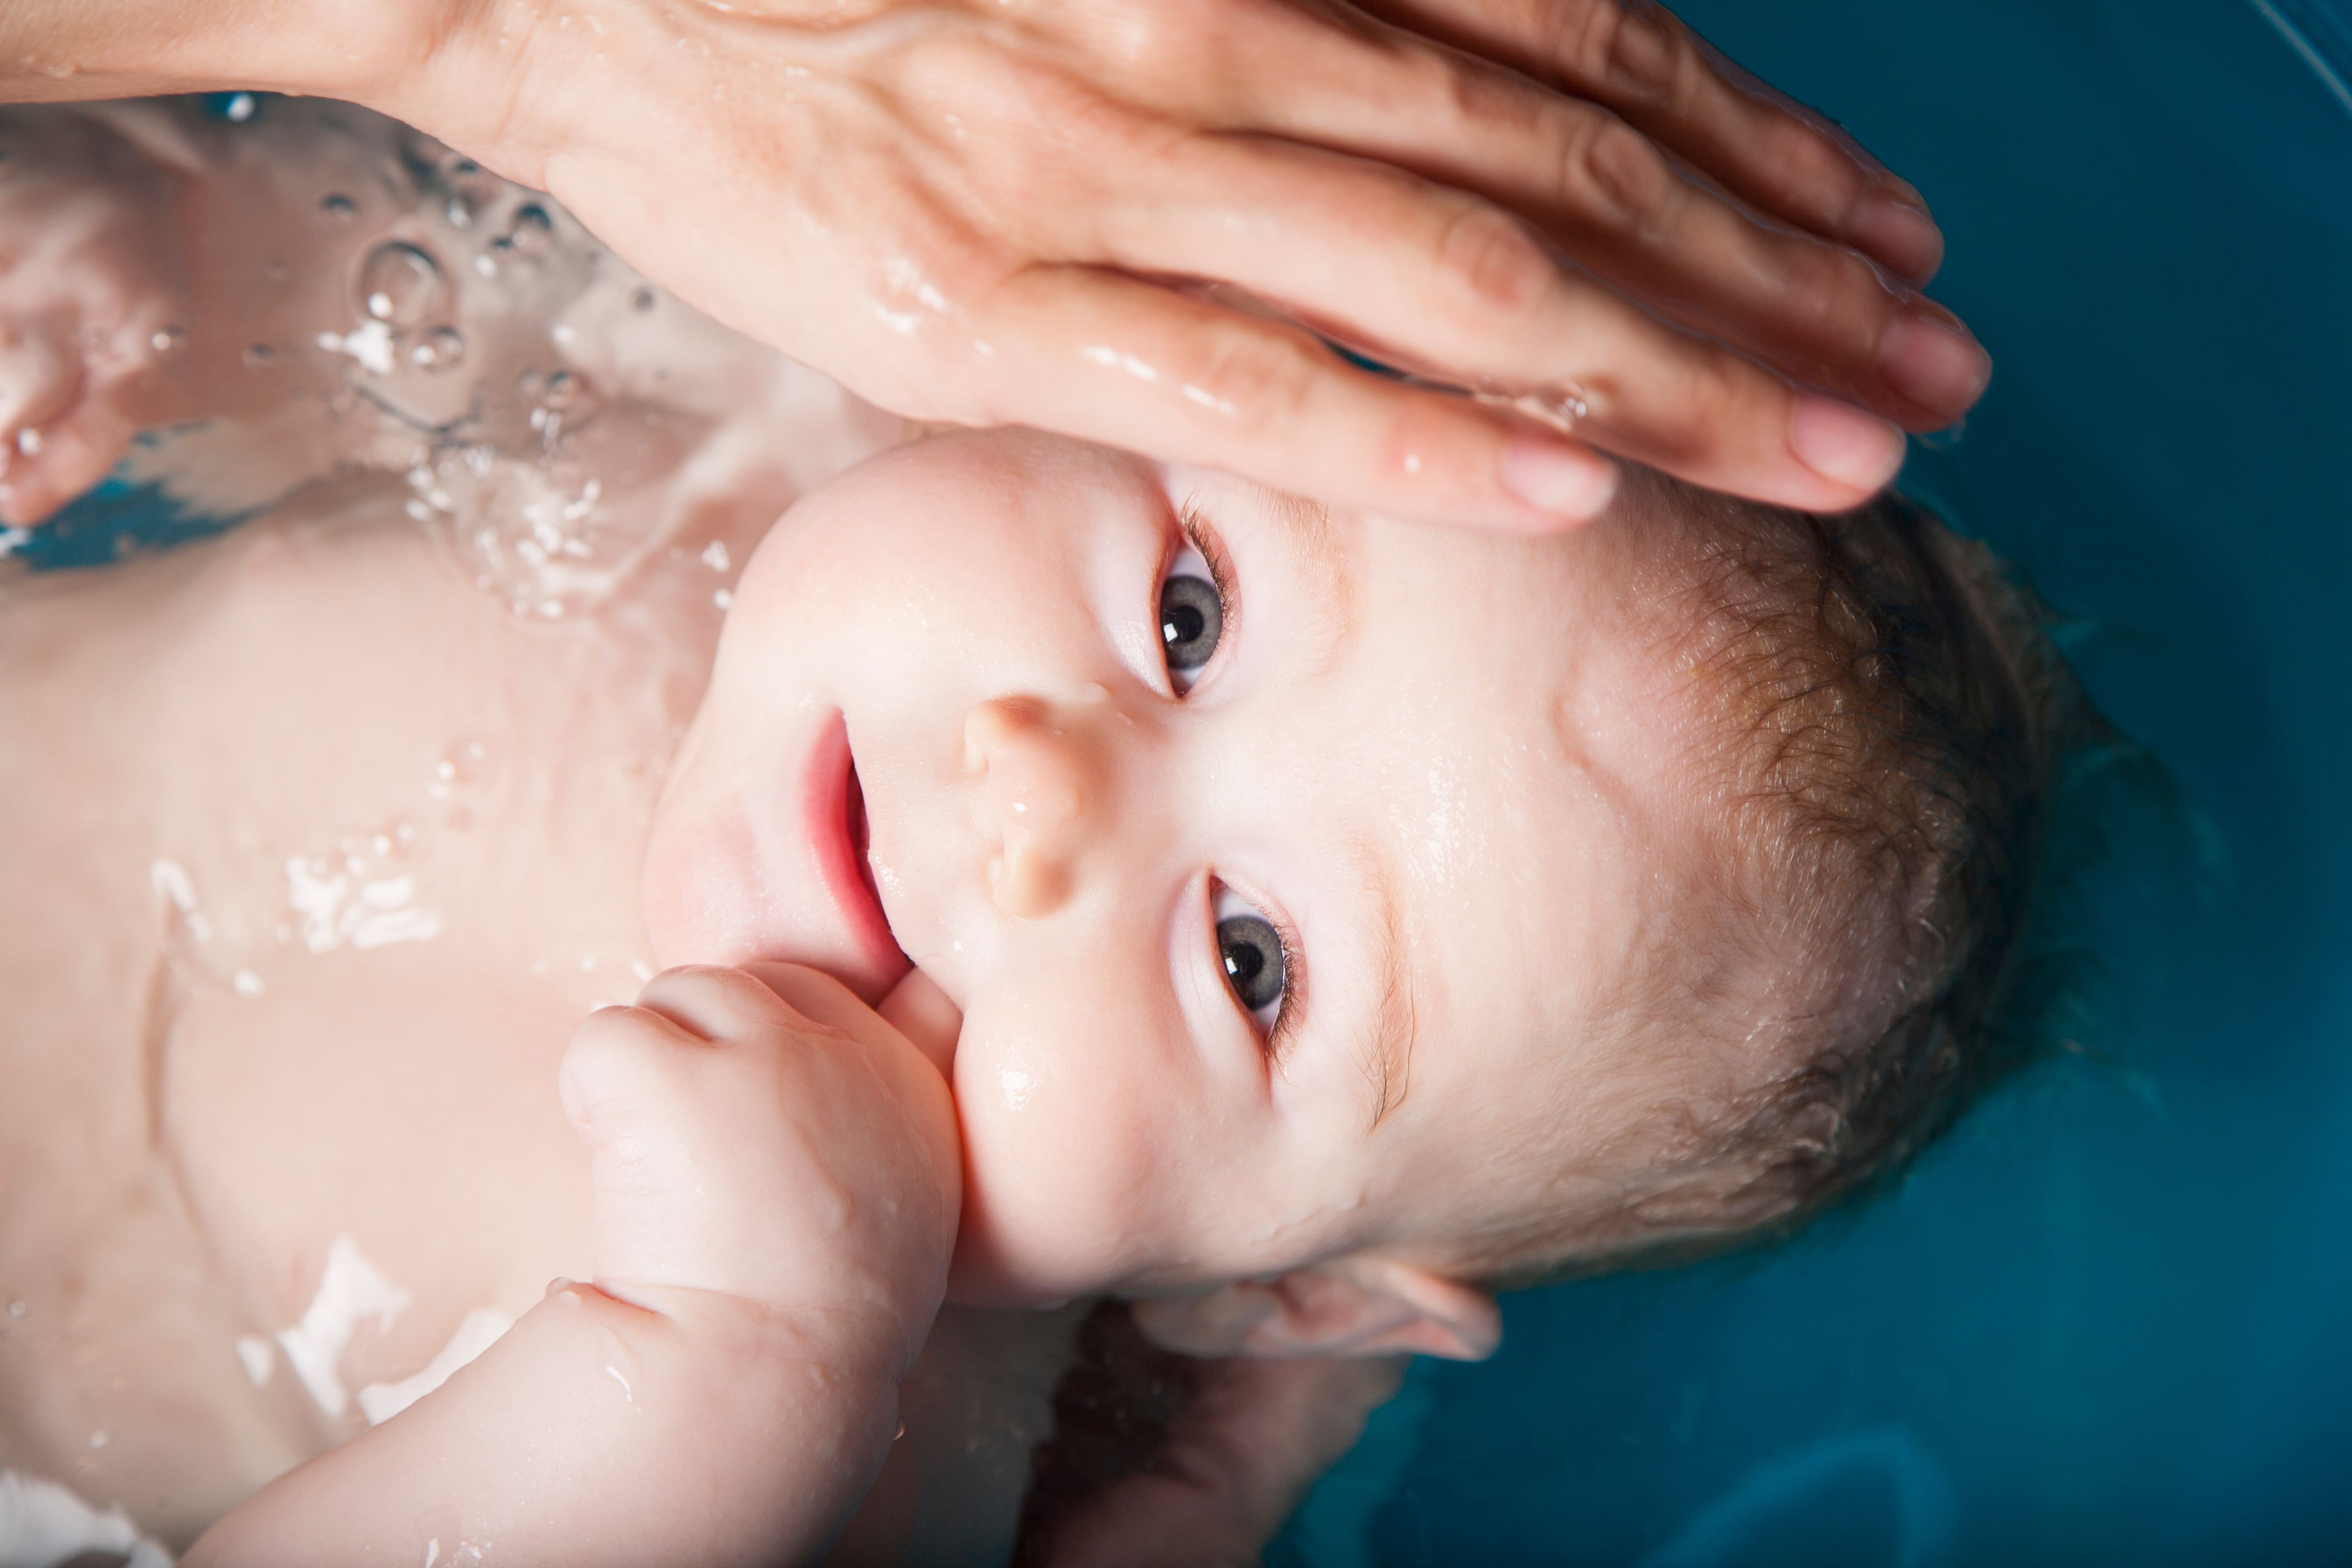 Bebé siendo bañado por su madre en una bañera de plástico azul.